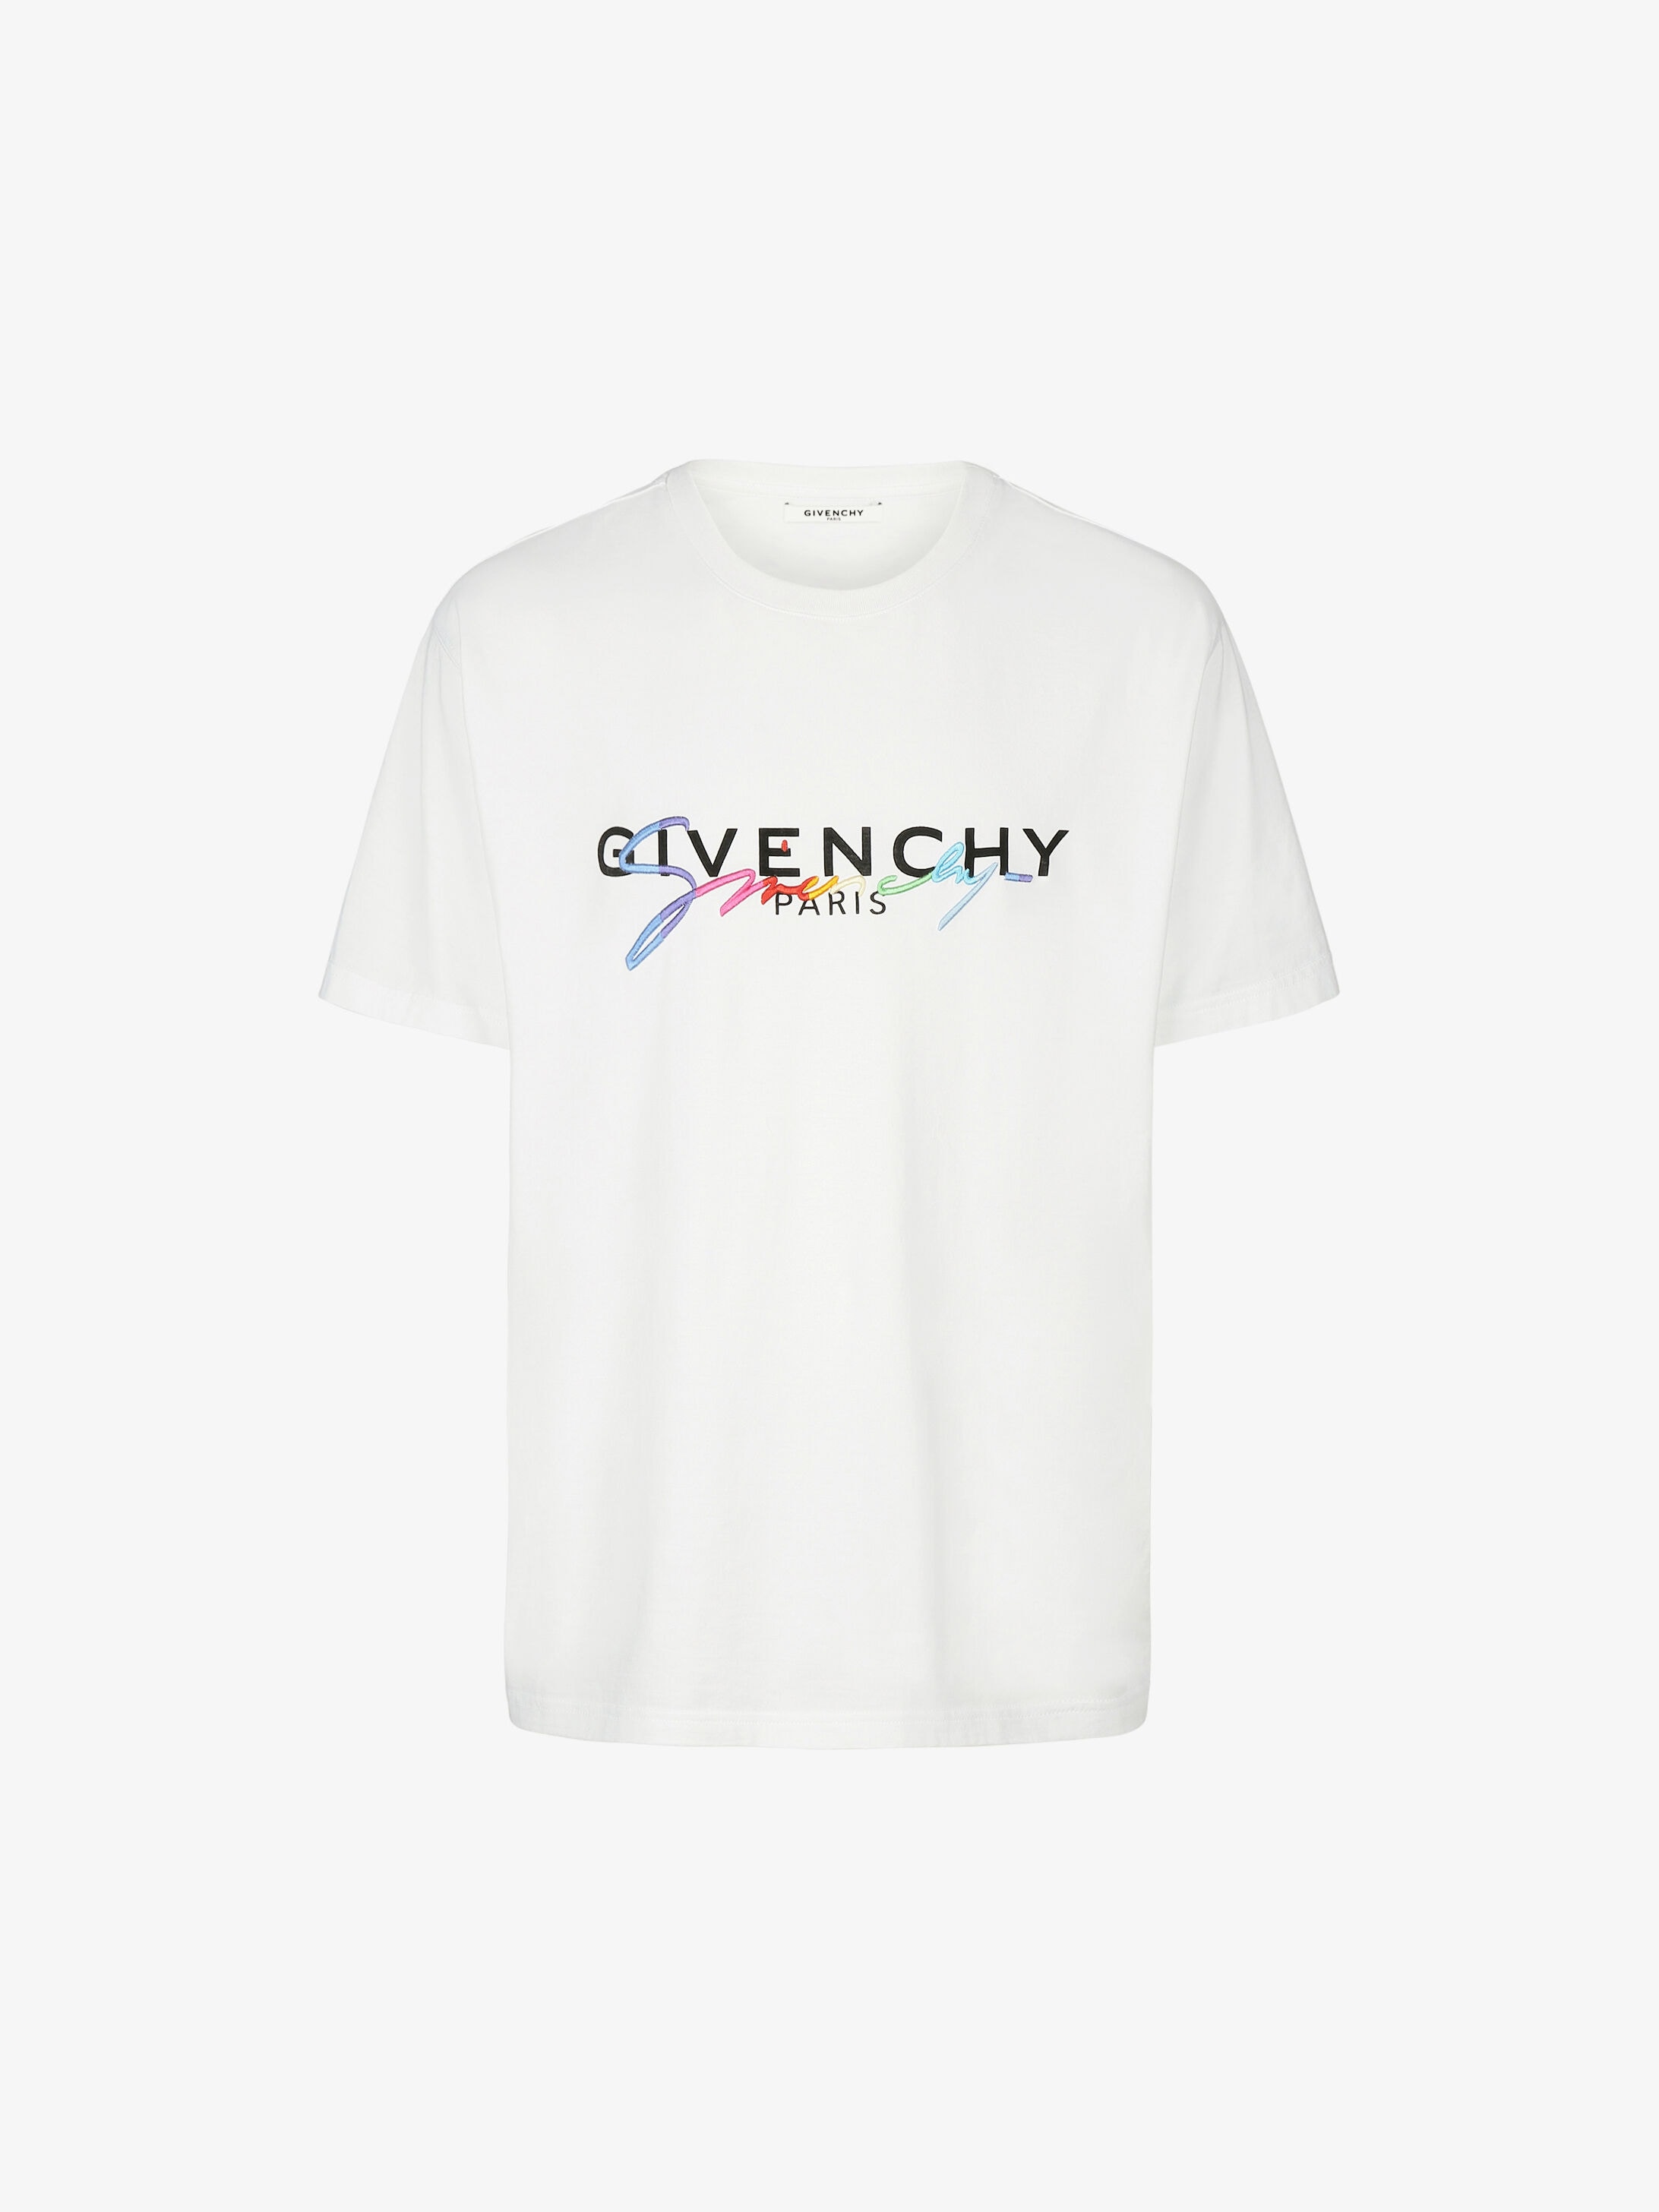 Givenchy T Shirt Givenchy Paris